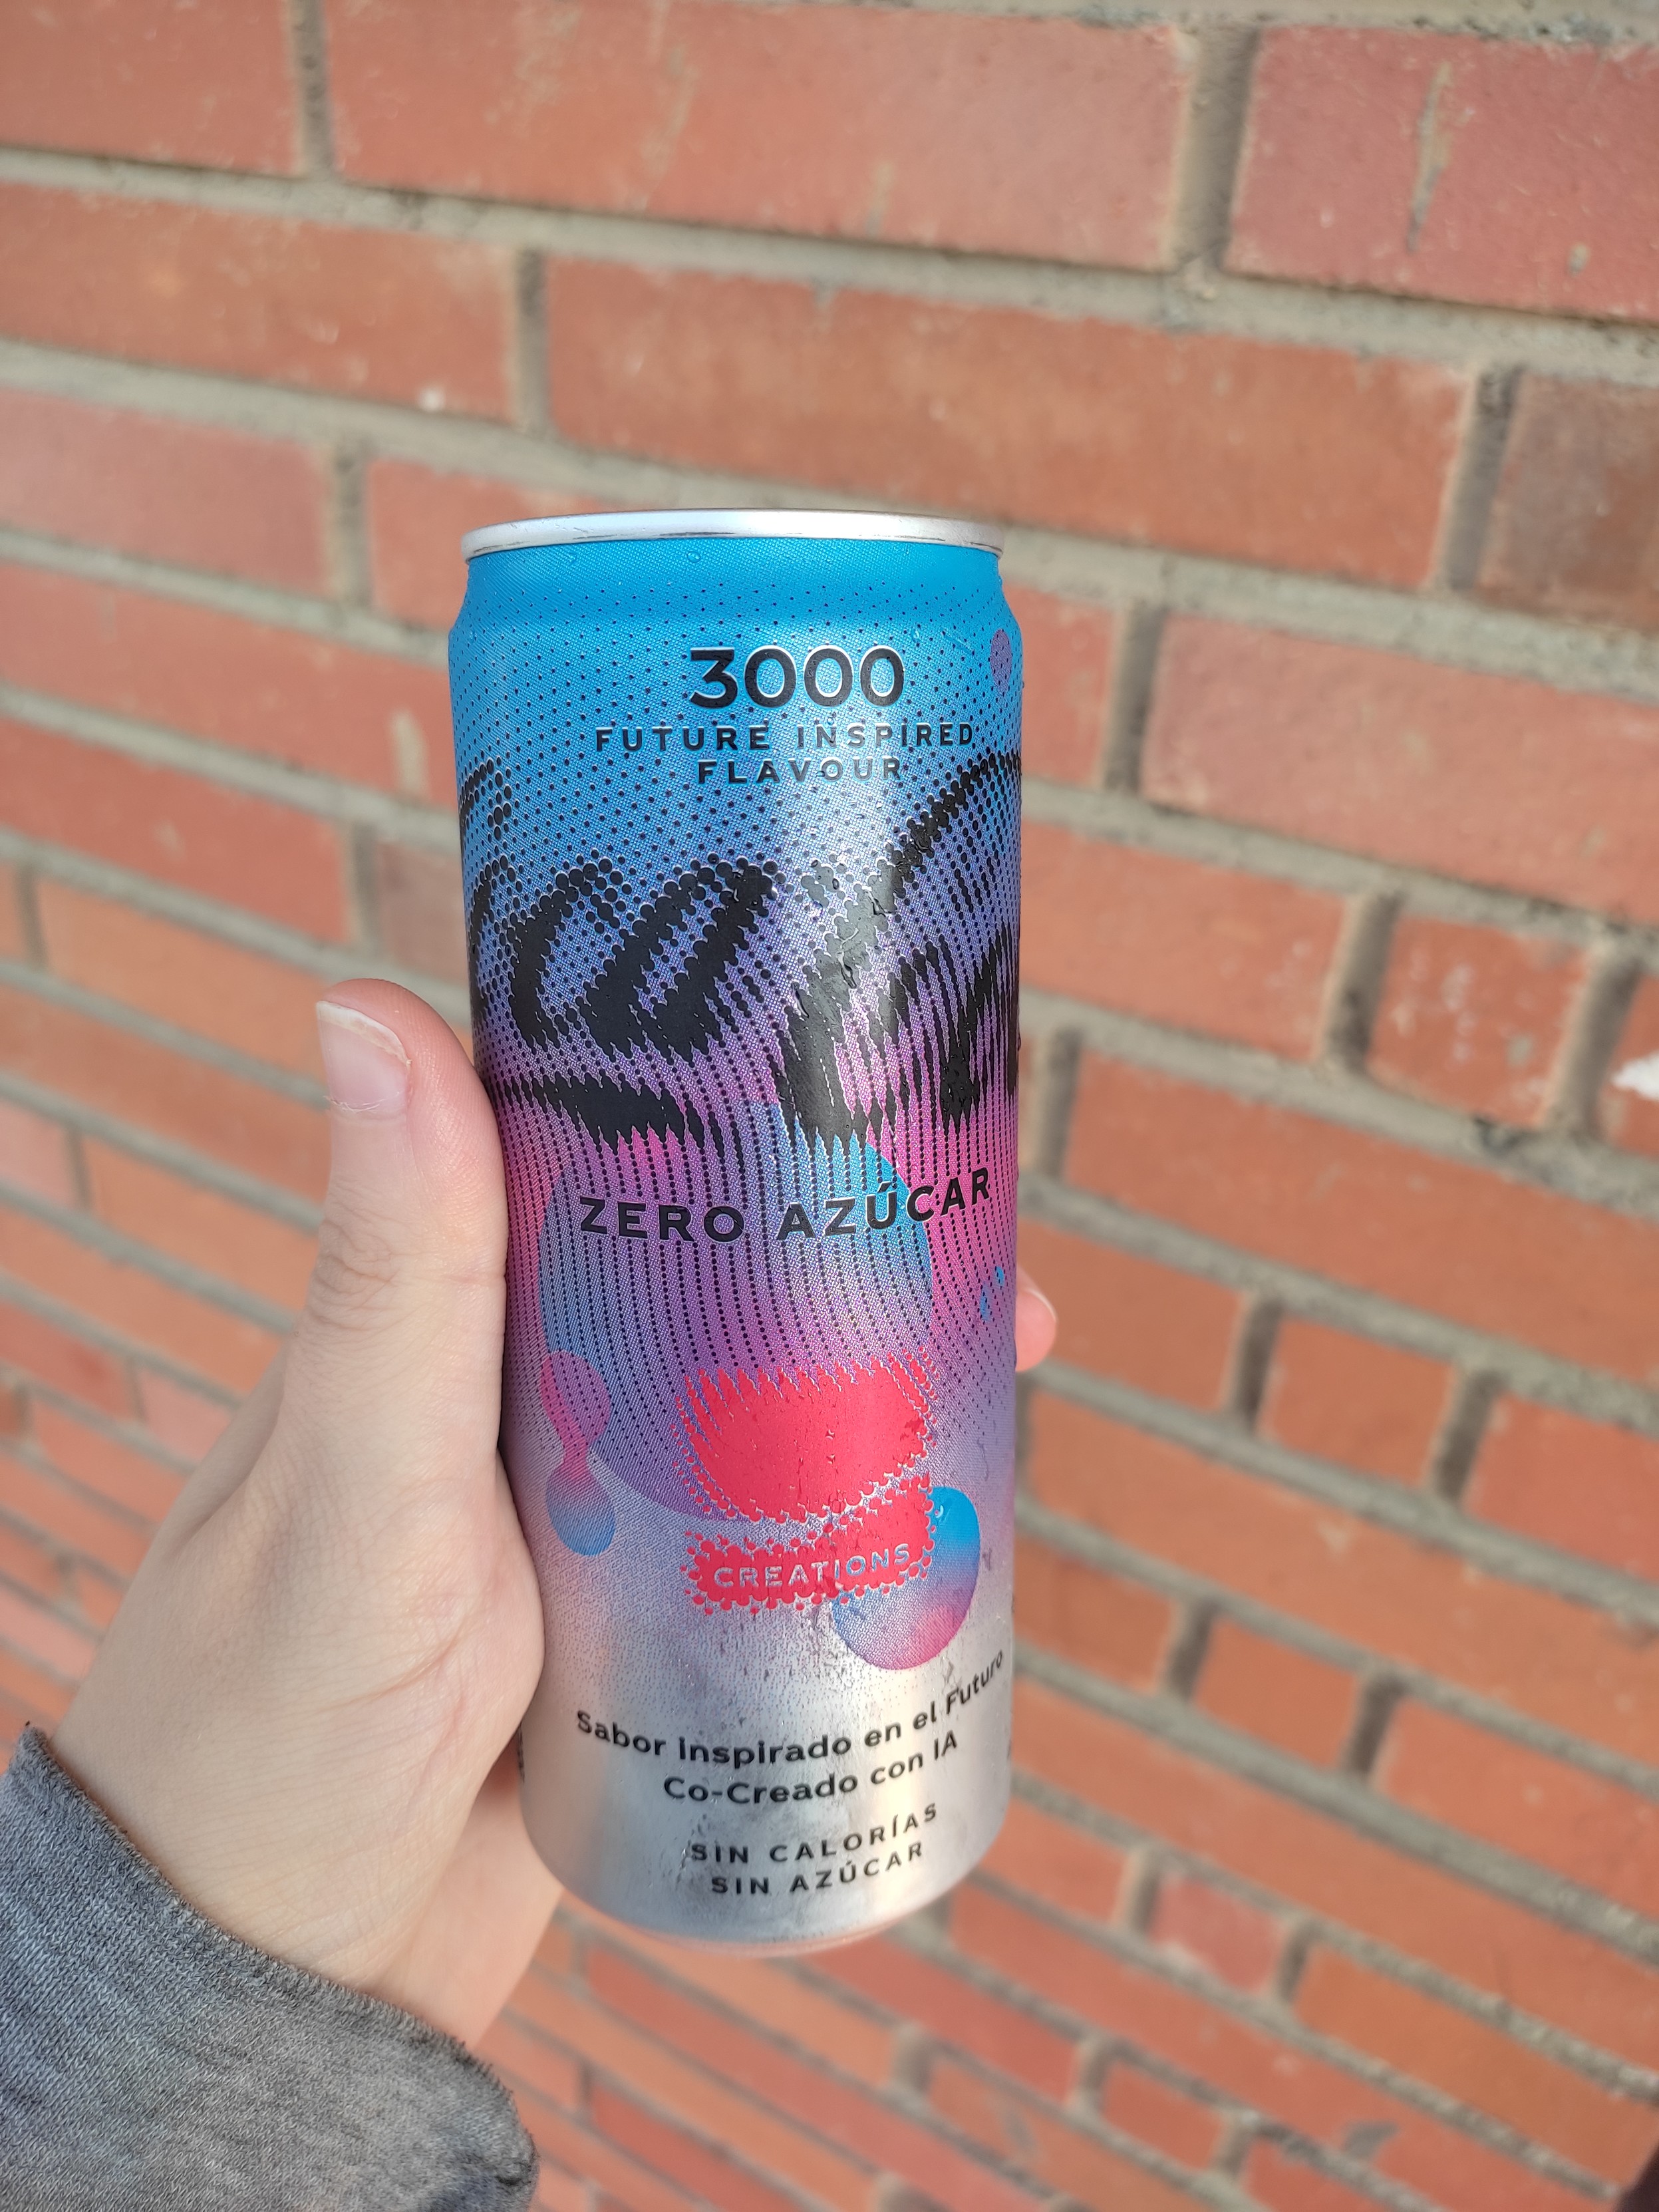 Lata de Coca-Cola Zero azúcar con colores azules y rosados que me dice que ha sido co-creada por una IA. Venga ya, nos vamos a la mierda